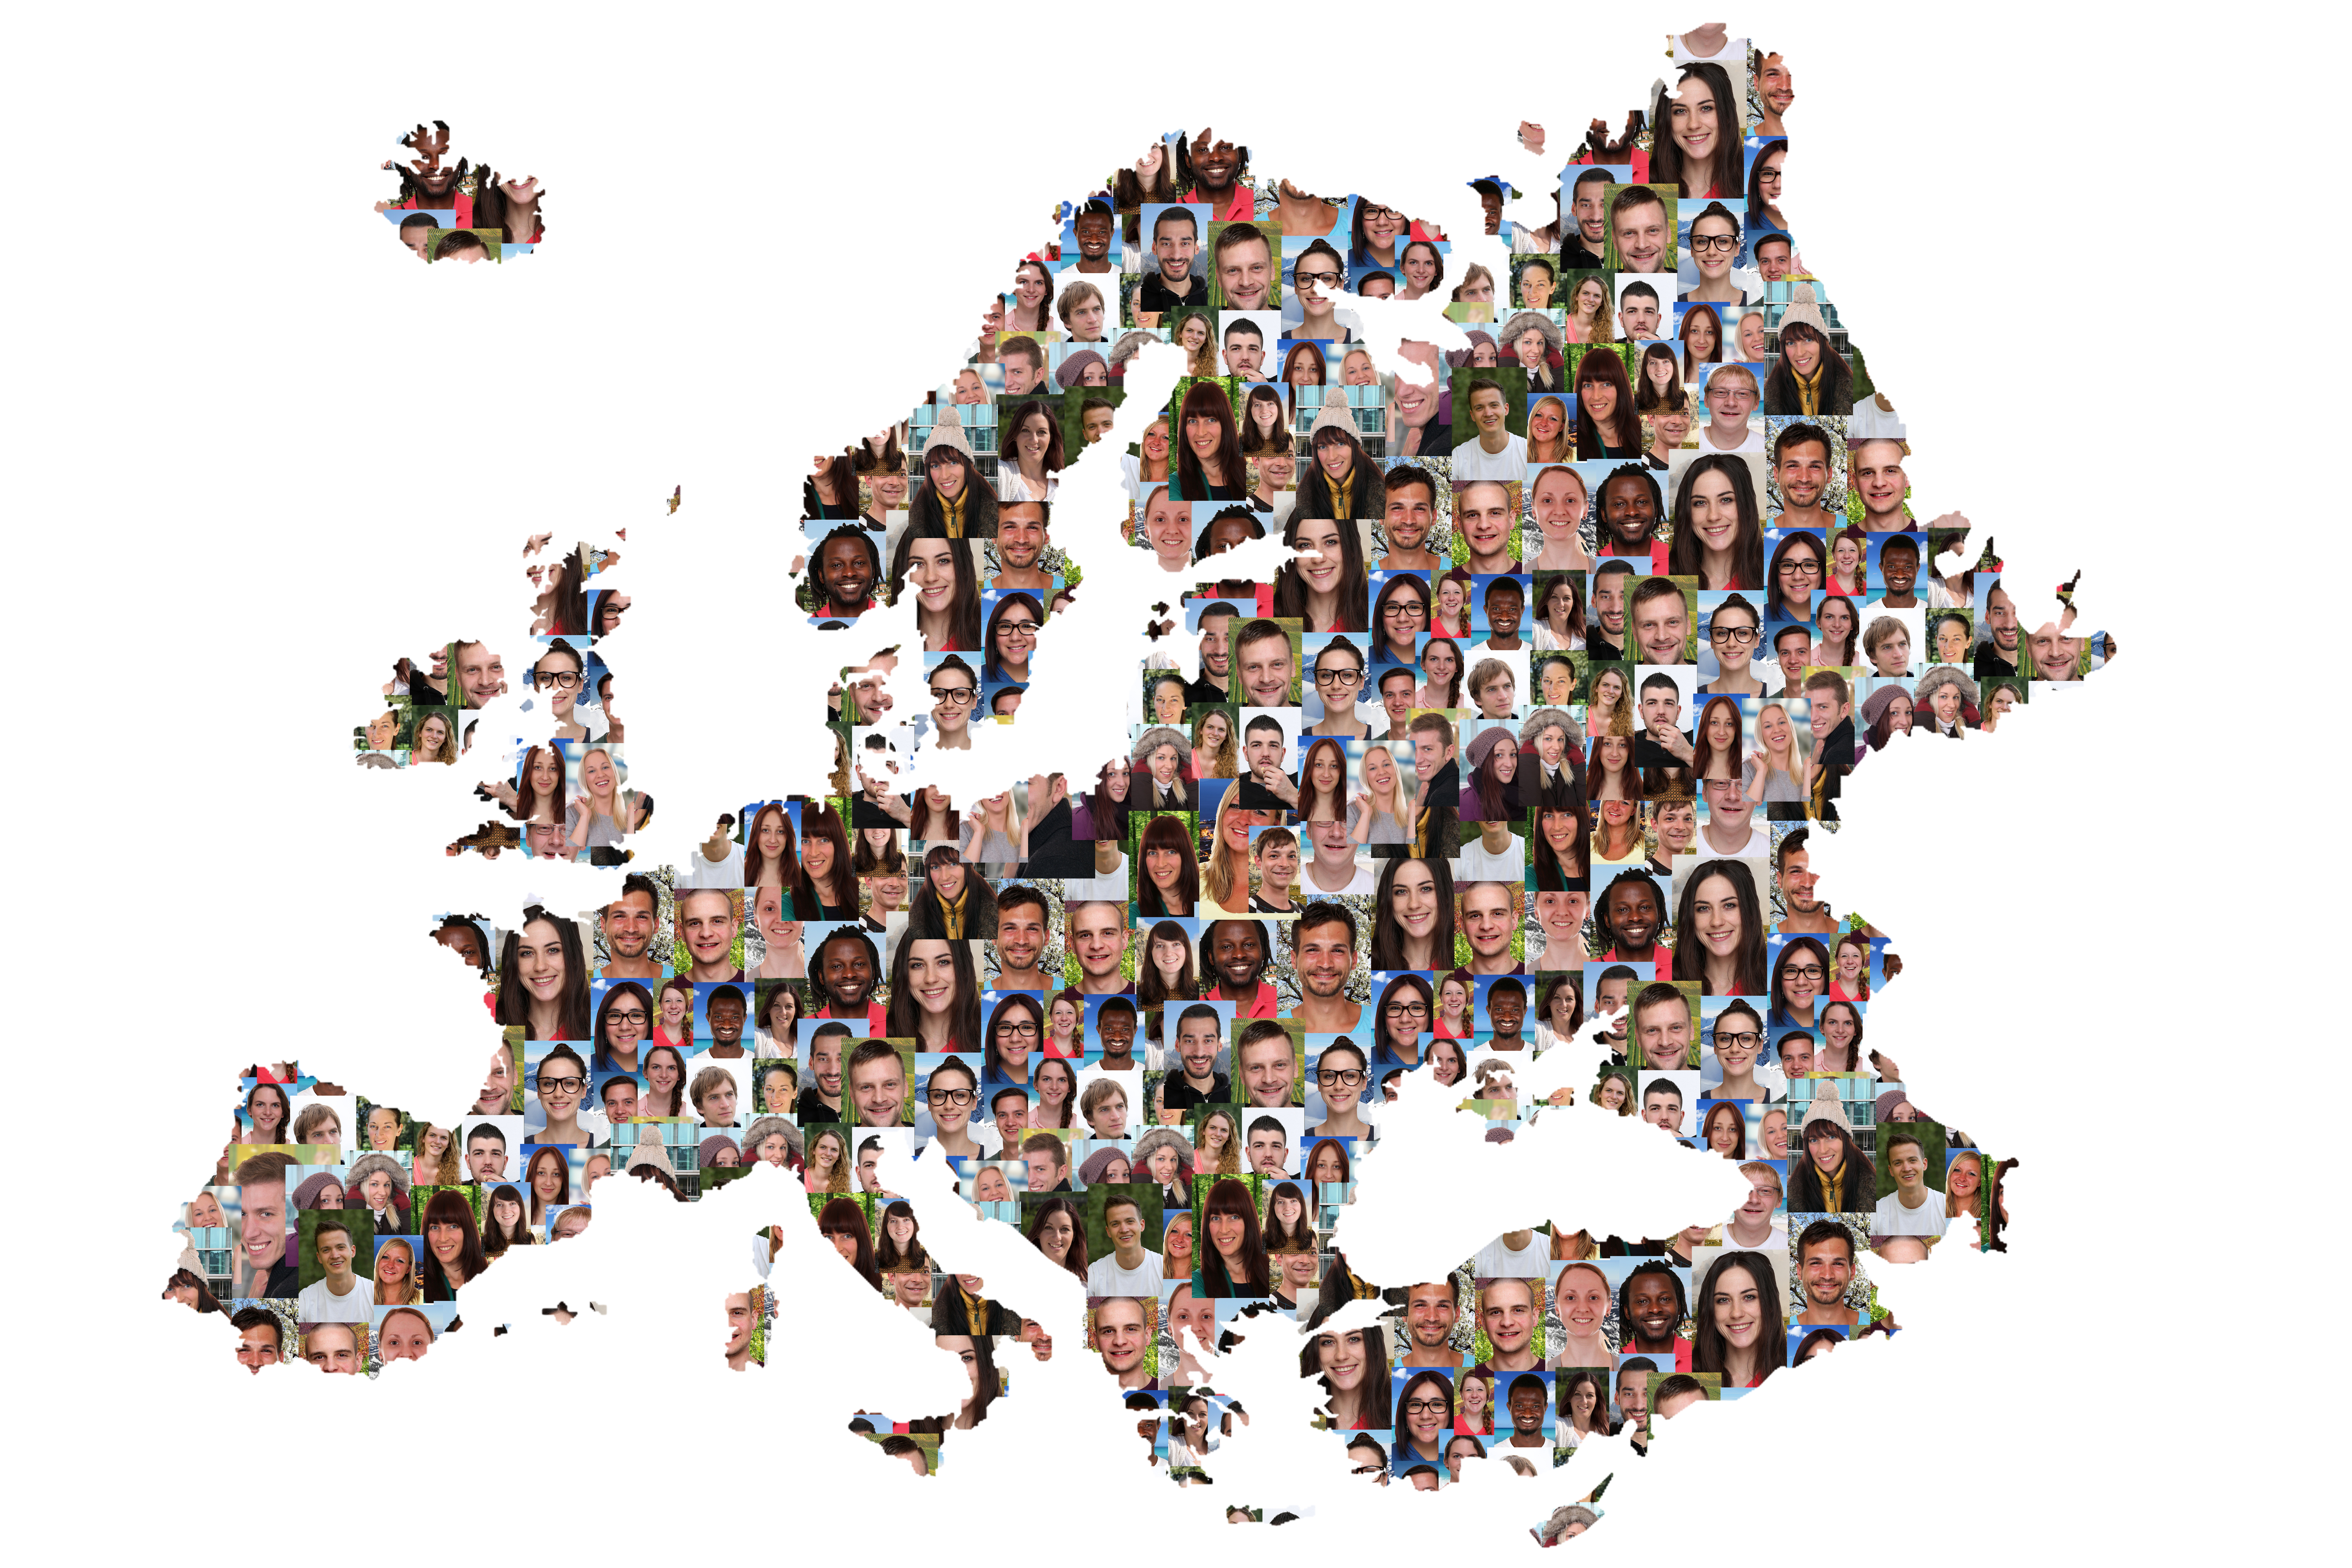 Ein Bild der europäischen Landkarte, die aus unterschiedlichen Gesichtern besteht